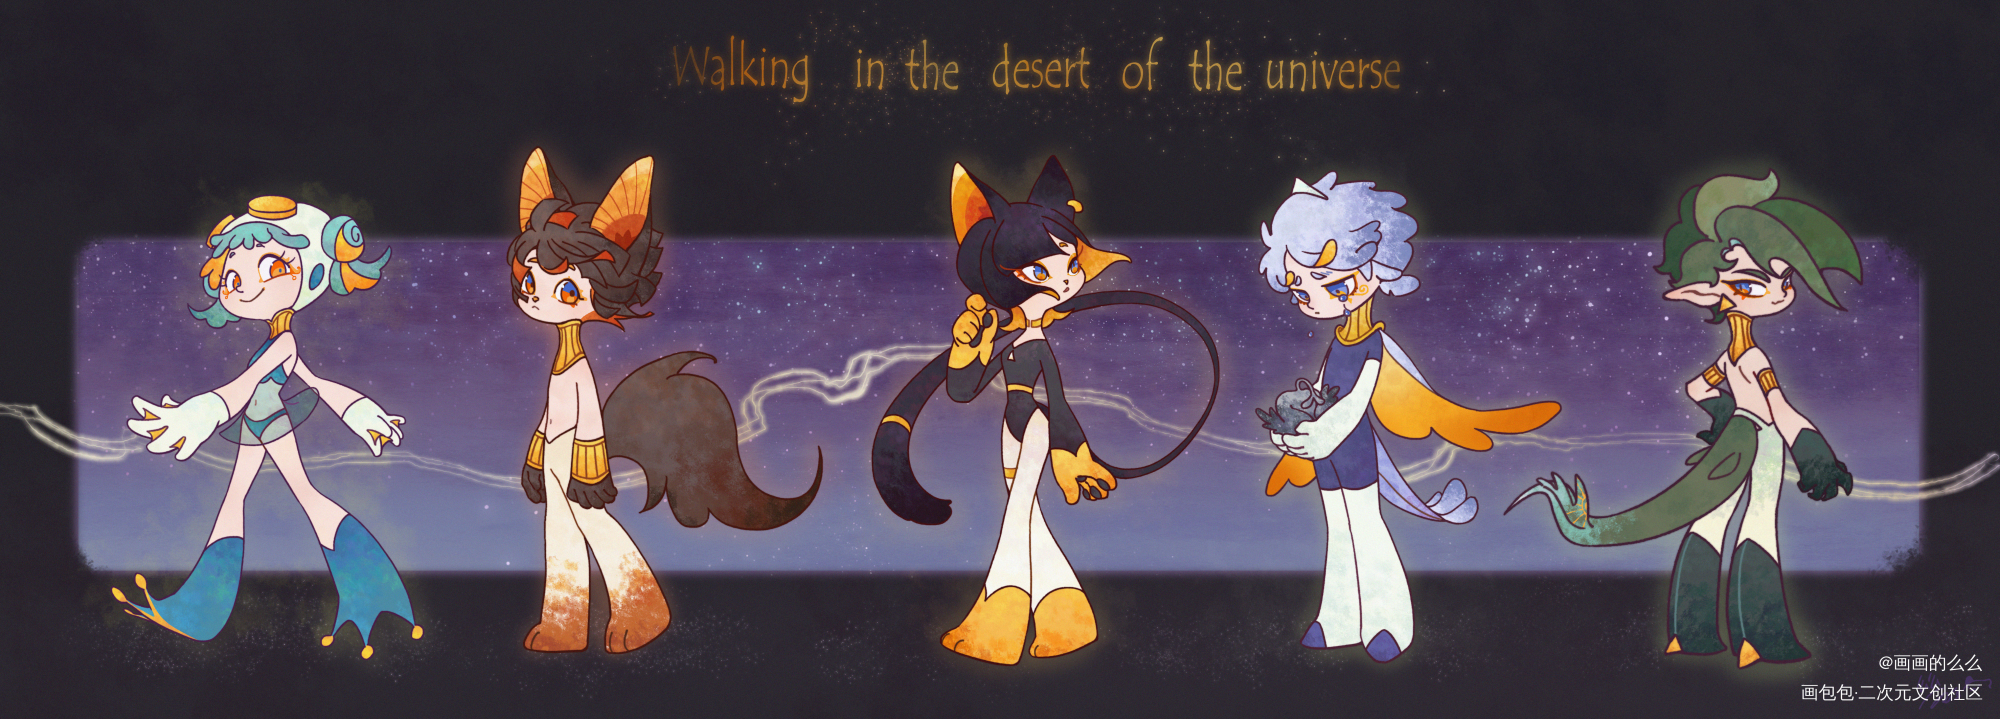 《行走在宇宙的沙漠中》_人群中的神明立绘平涂日系原创oc绘画作品